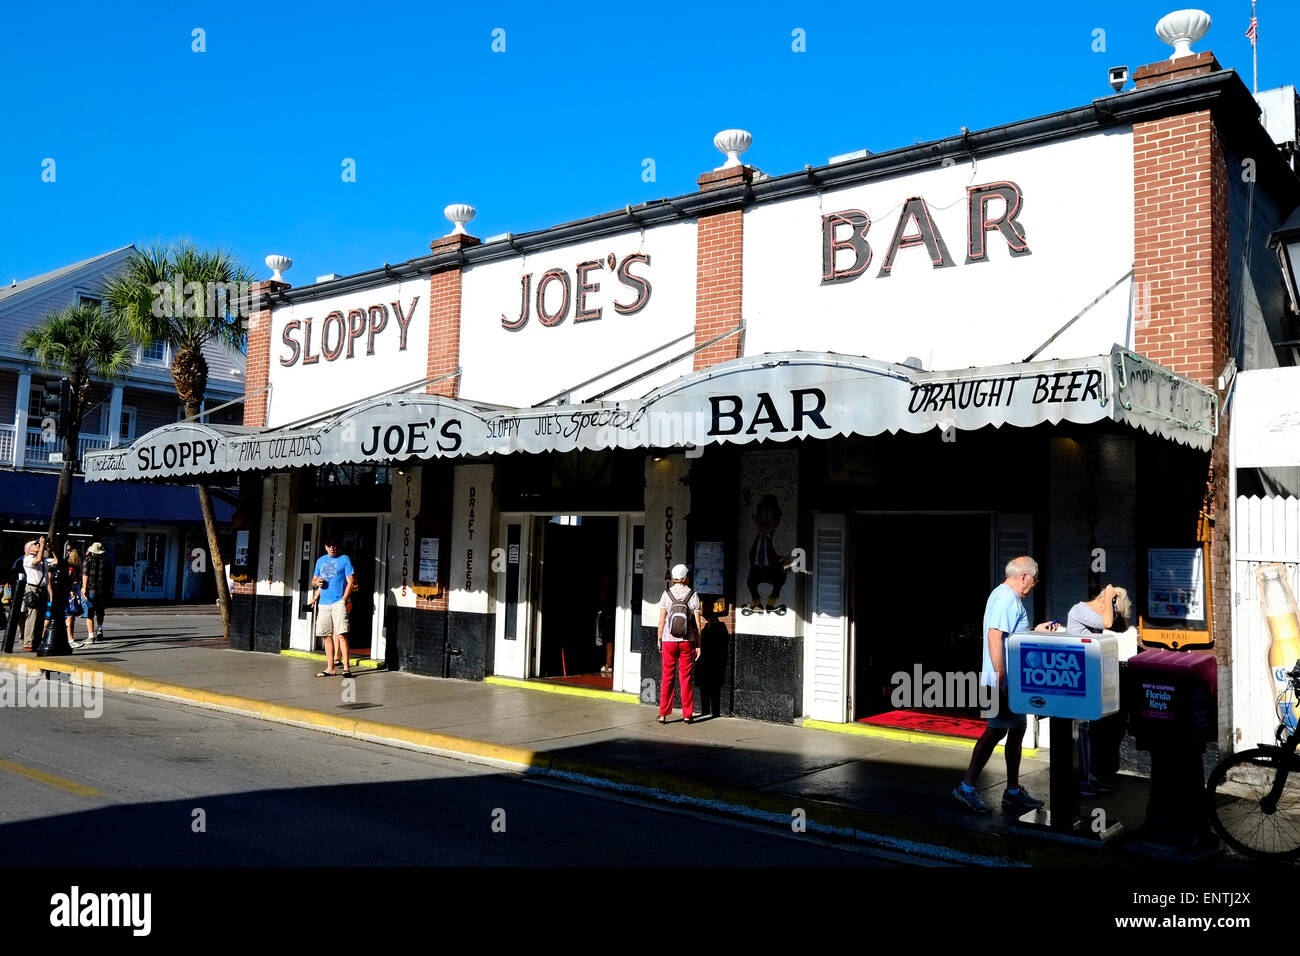 Sloppy Joe's Bar Key West FL Floride destination pour l'ouest de Tampa Crusie Caraïbes Banque D'Images